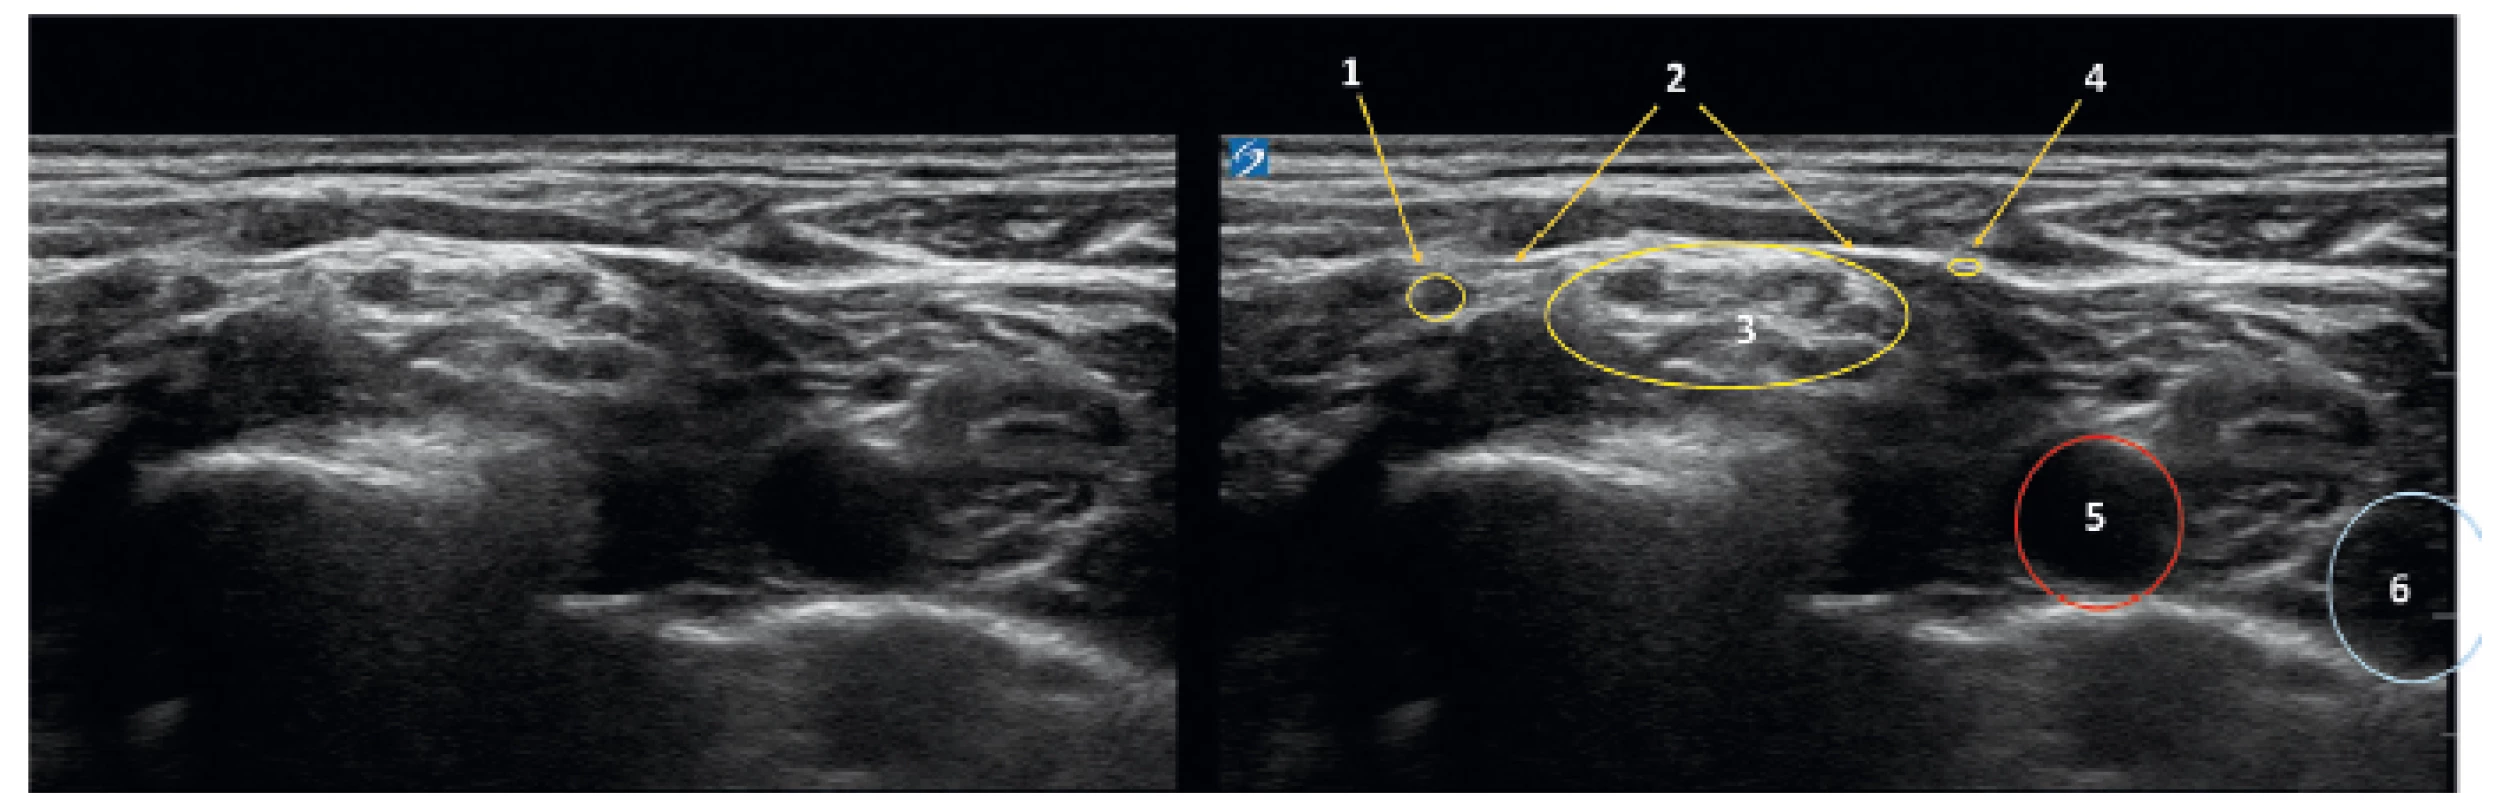 Ultrazvukový obraz krku v úrovni C 6.7
1 – levý supraskapulární nerv, 2 – fascie k m. omohyoideus, 3 – brachiální plexus, 4 – n. subclavius, 5 – arteria carotis, 6 – v. jugularis